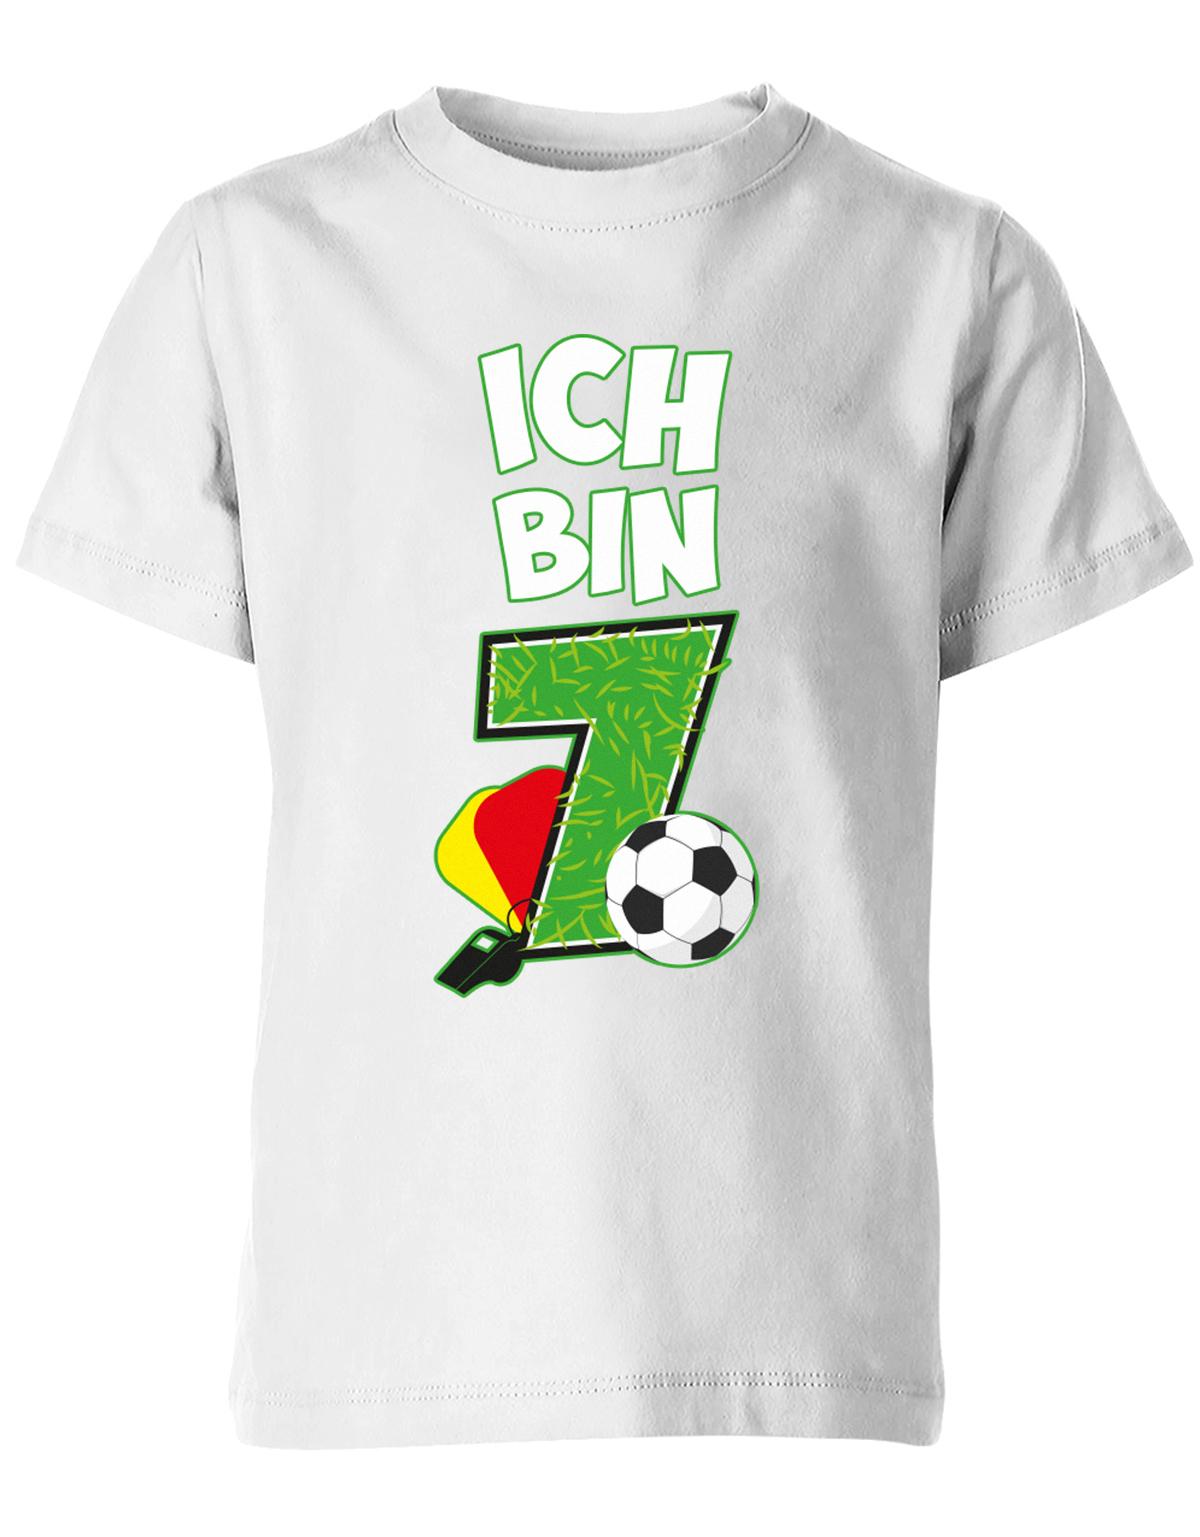 ich-bin-7-fussball-rote-gelbe-karte-geburtstag-fussballer-shirt-kinder-shirt-weiss